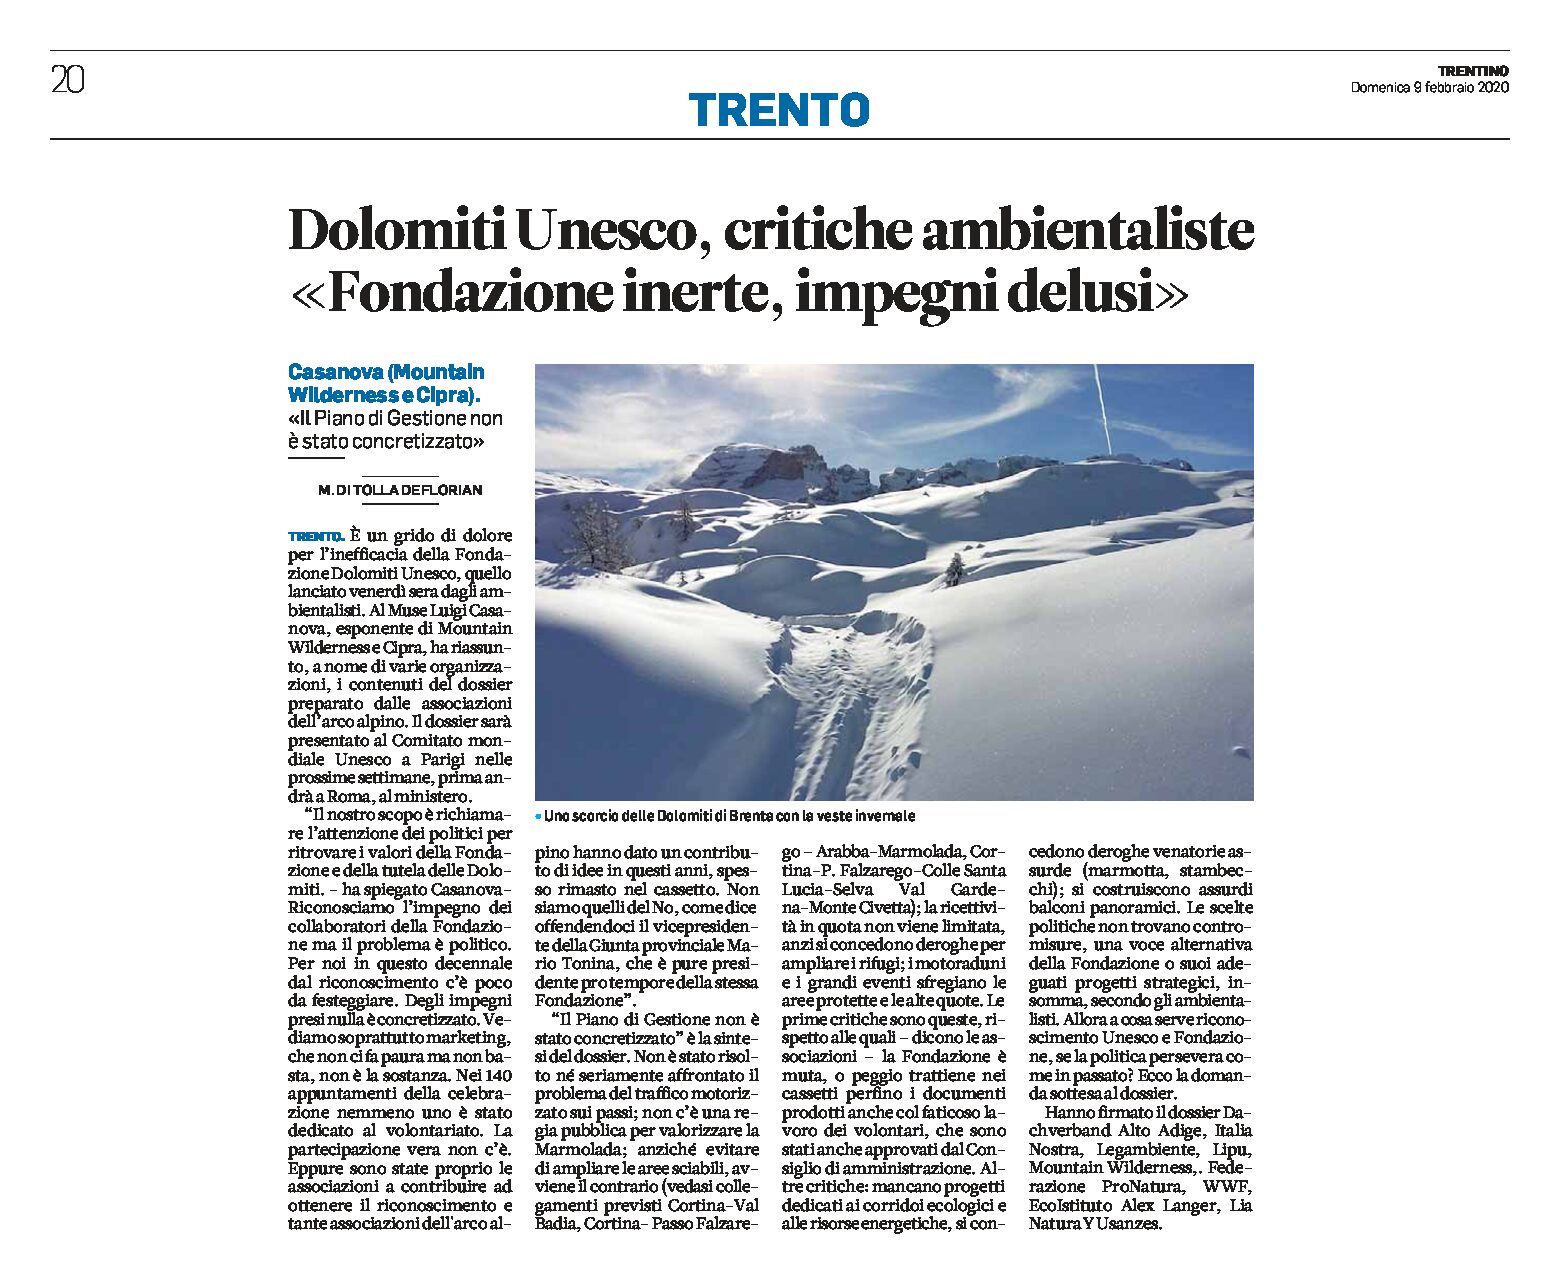 Dolomiti Unesco: critiche ambientaliste. Casanova “Fondazione inerte”